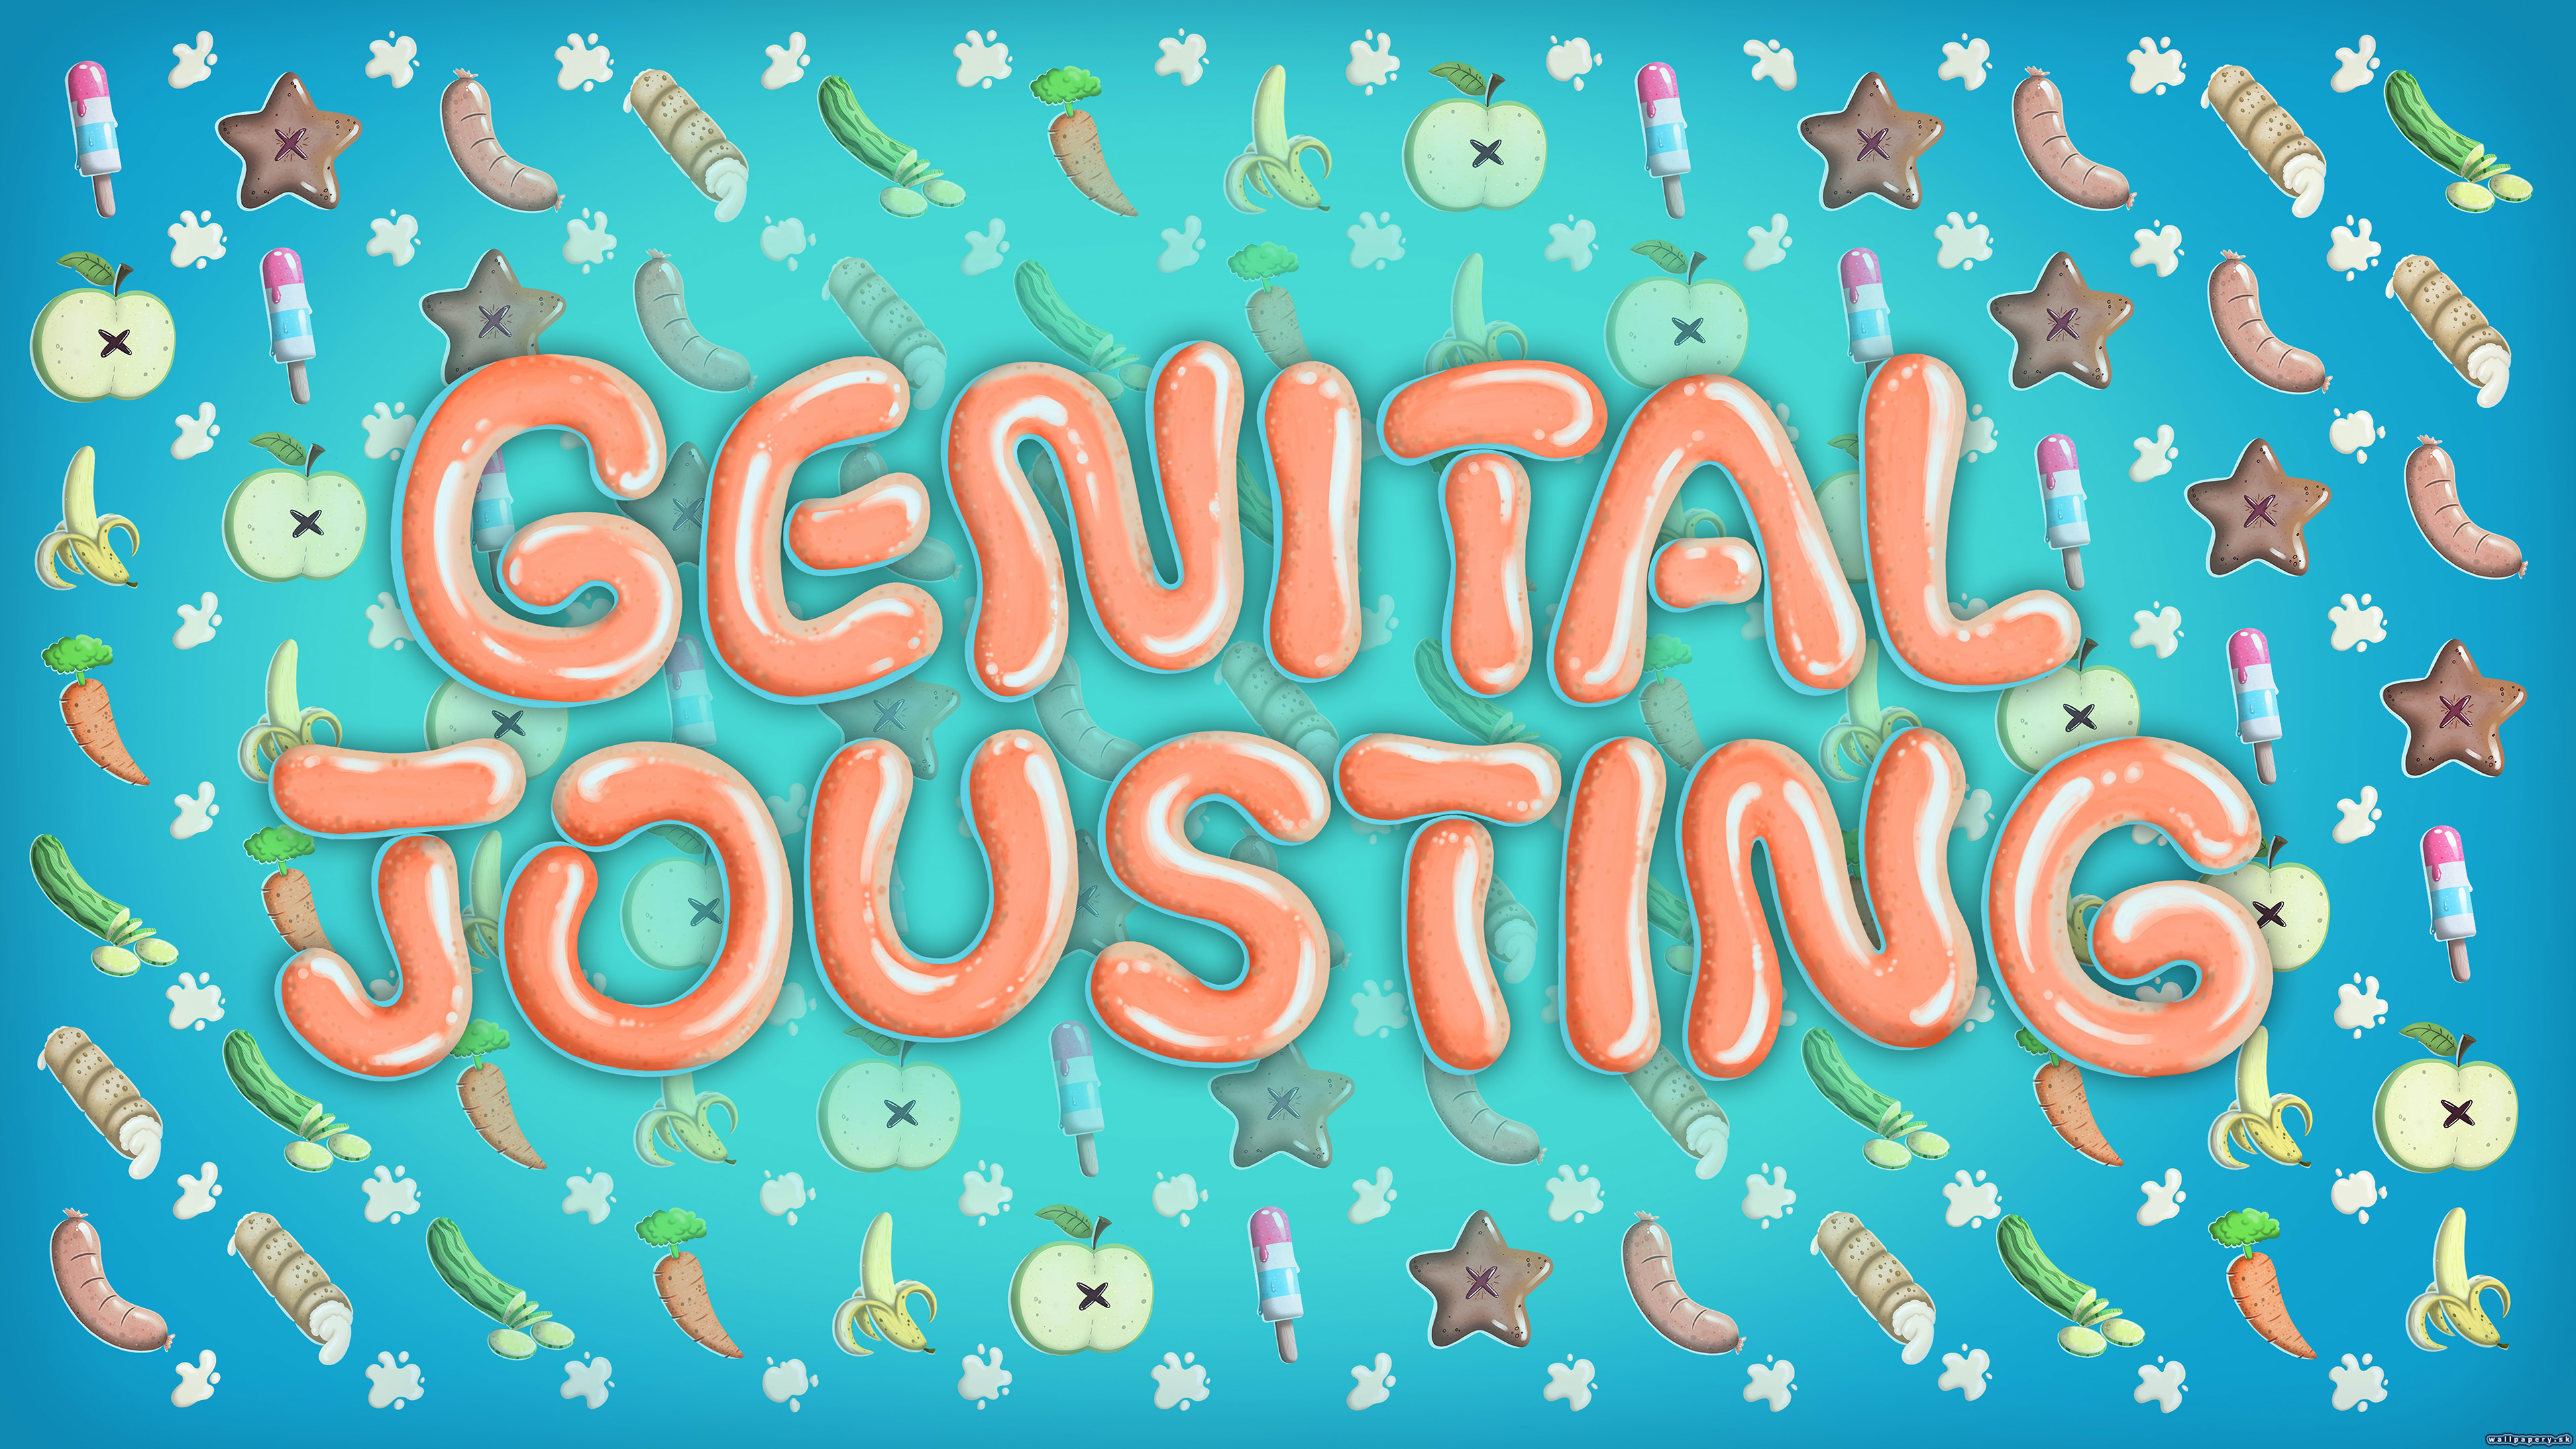 genital jousting endings